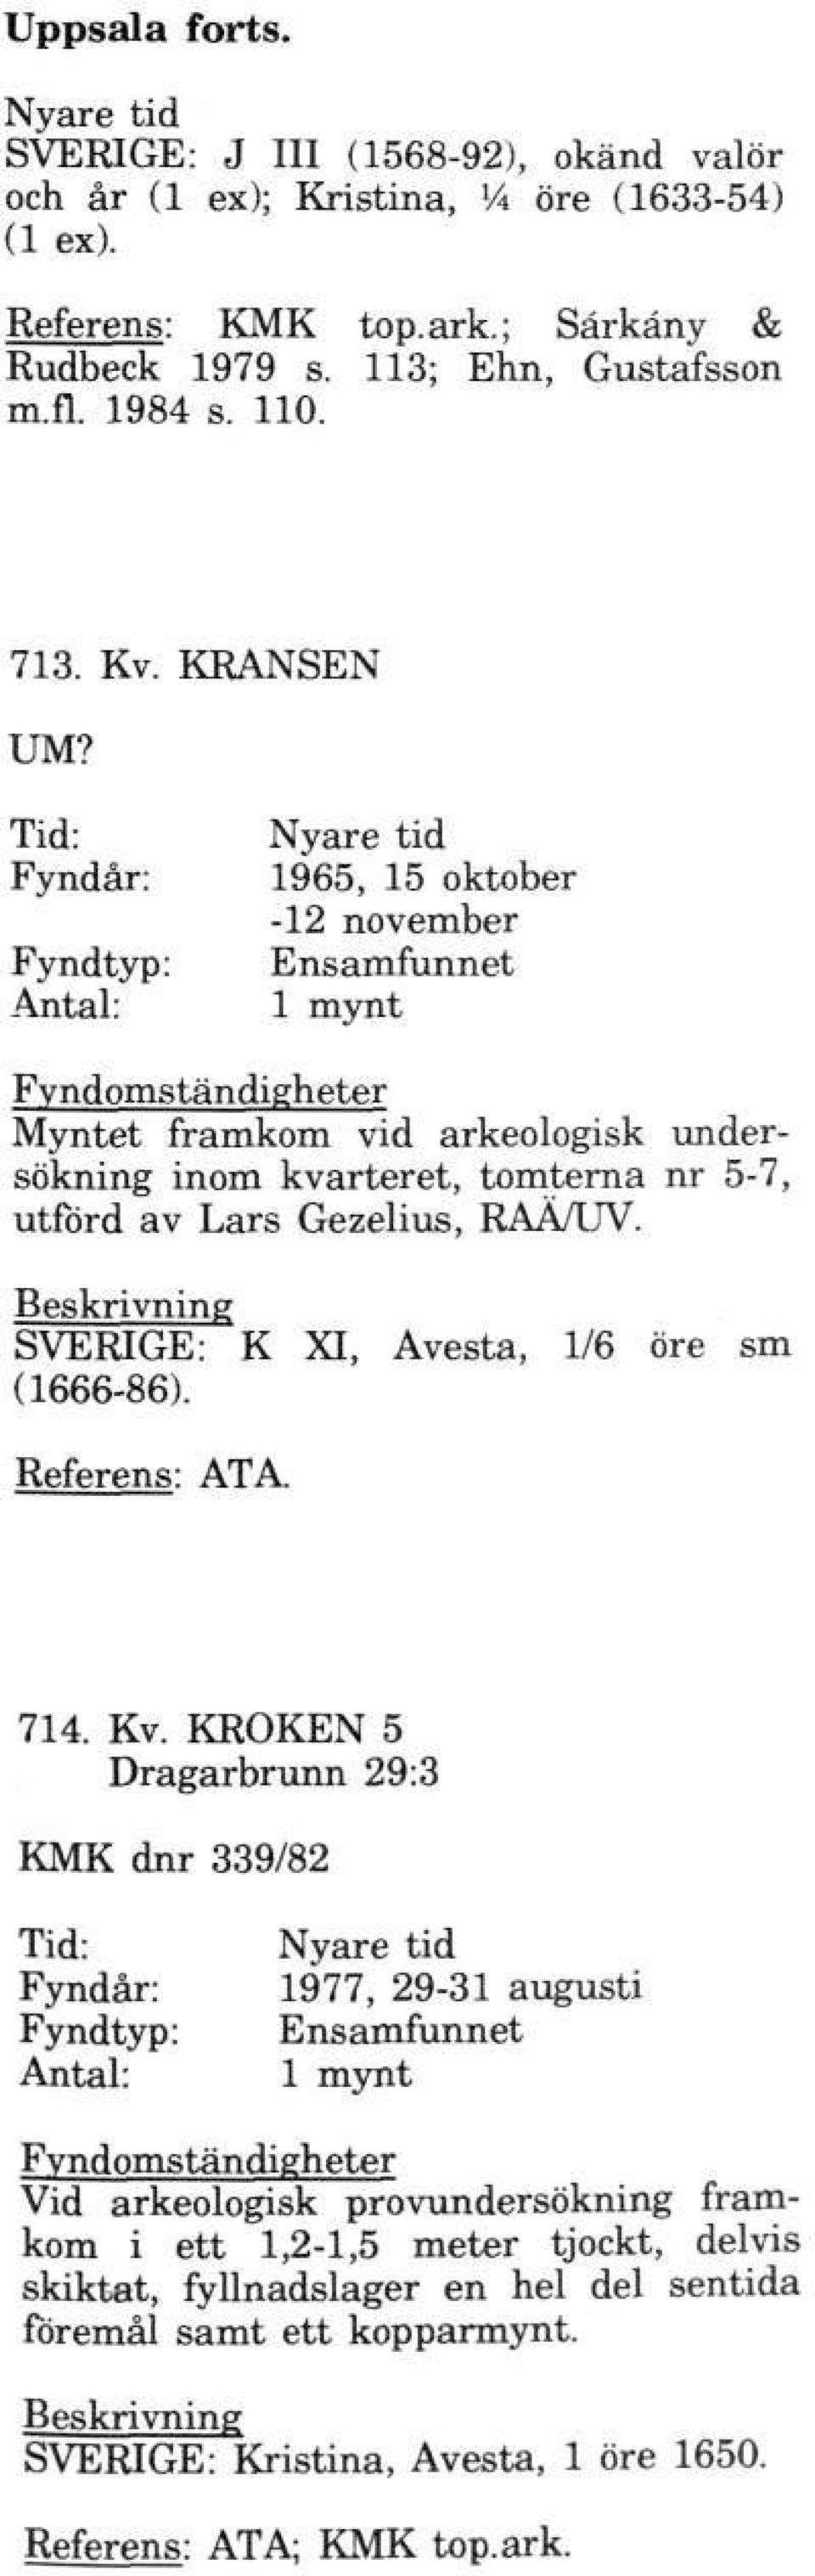 Tid: Fyndår: 1965, 15 oktober -12 november Ensamfunnet 1 mynt Myntet framkom vid arkeologisk undersökning inom kvarteret, tomterna nr 5-7, utförd av Lars Gezelius, RAÄ/UV.